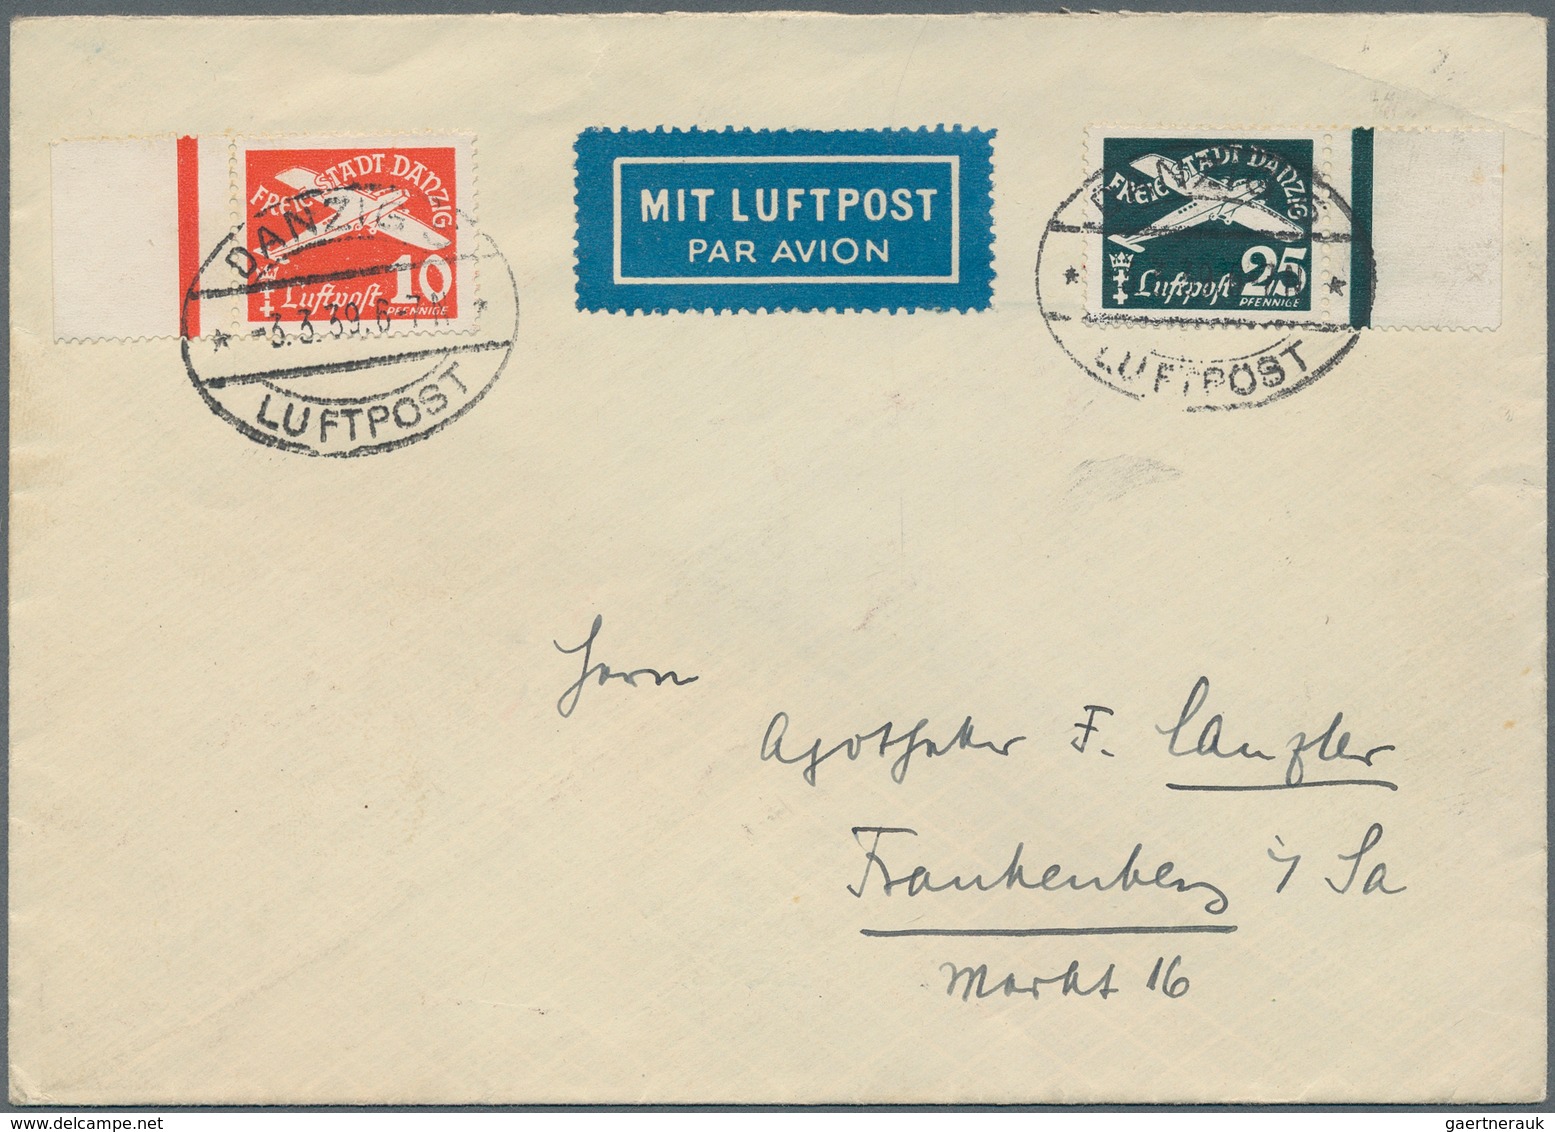 Deutschland: 1860/1955 (ca.), kleiner Karton mit rund 450 abwechslungsreichen Belegen ab Altdeutschl